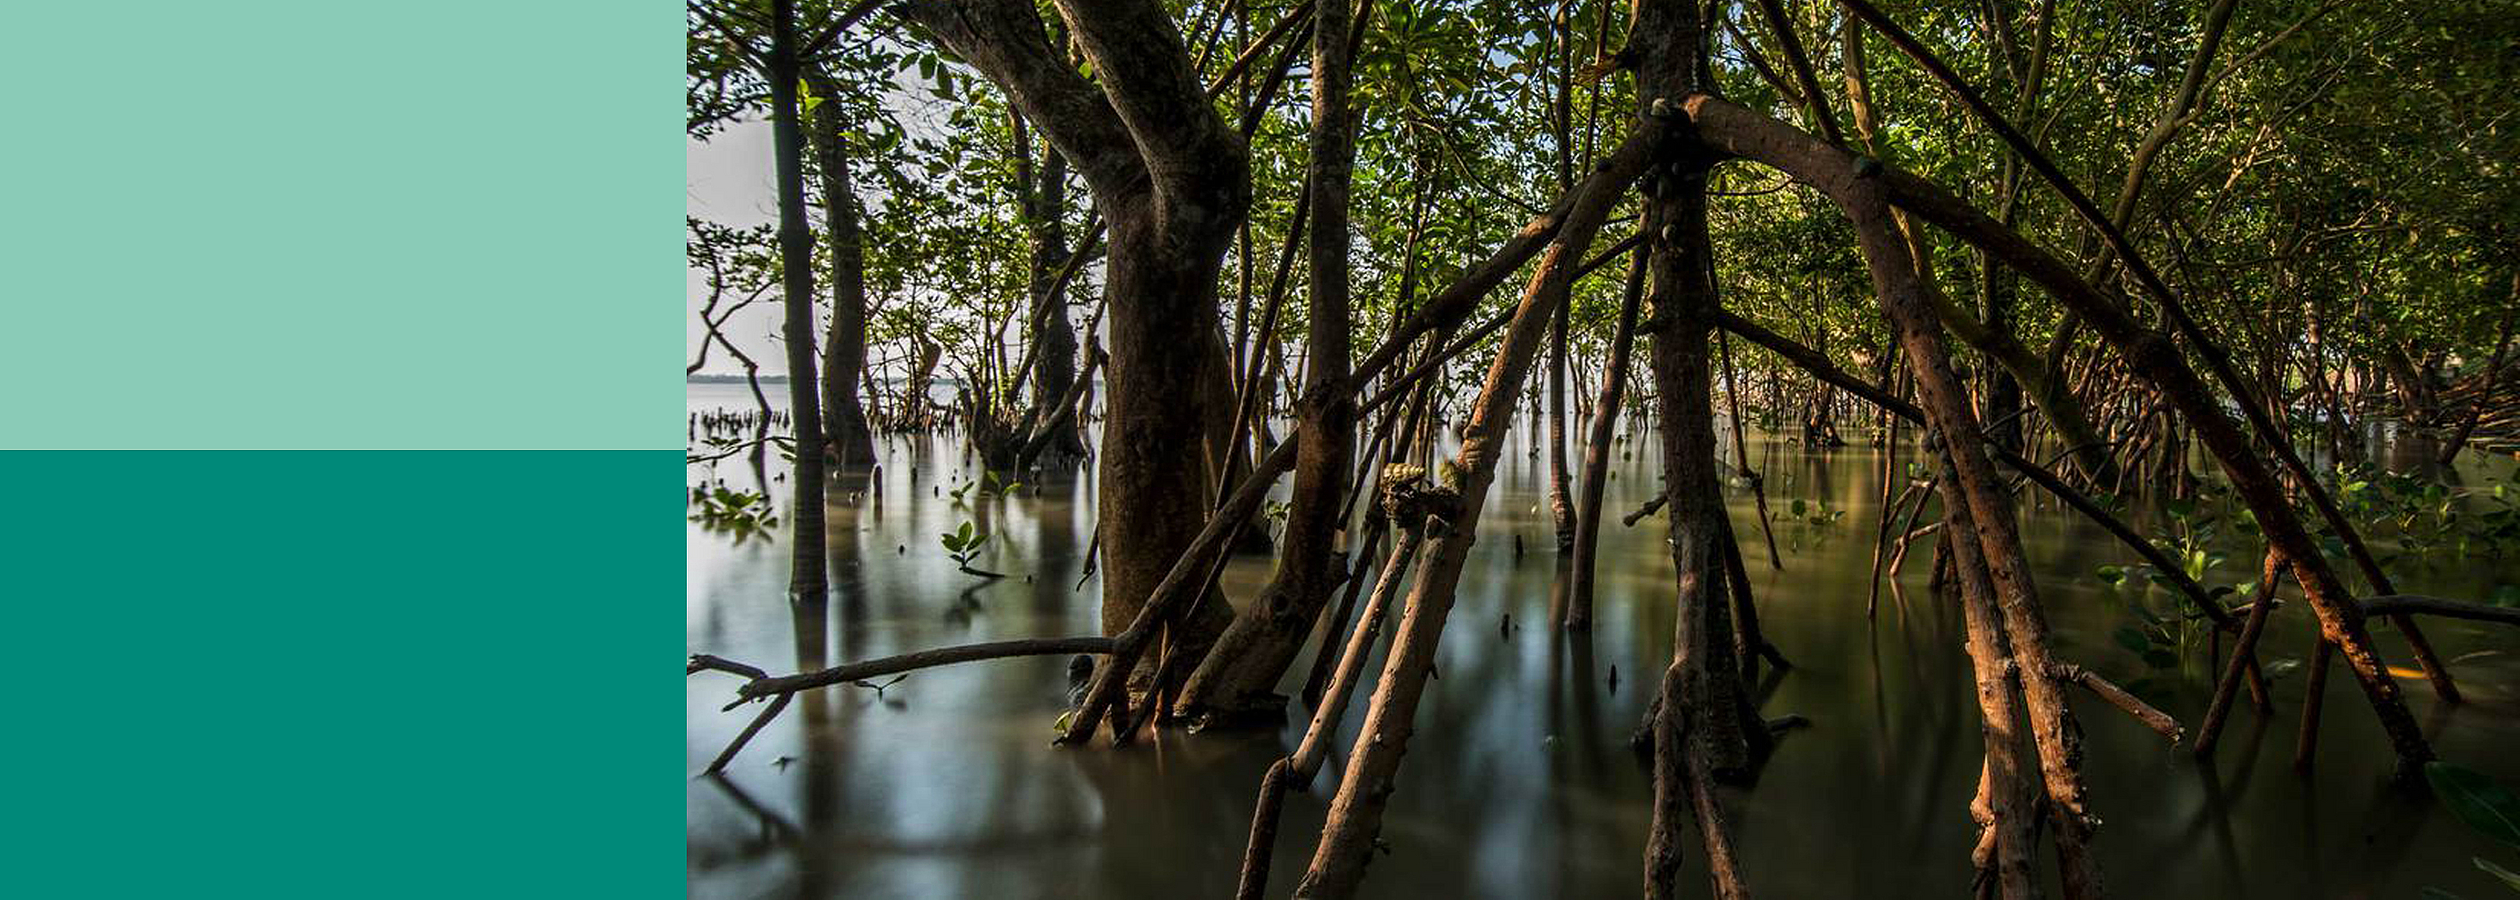 Mangroven stehen im Wasser